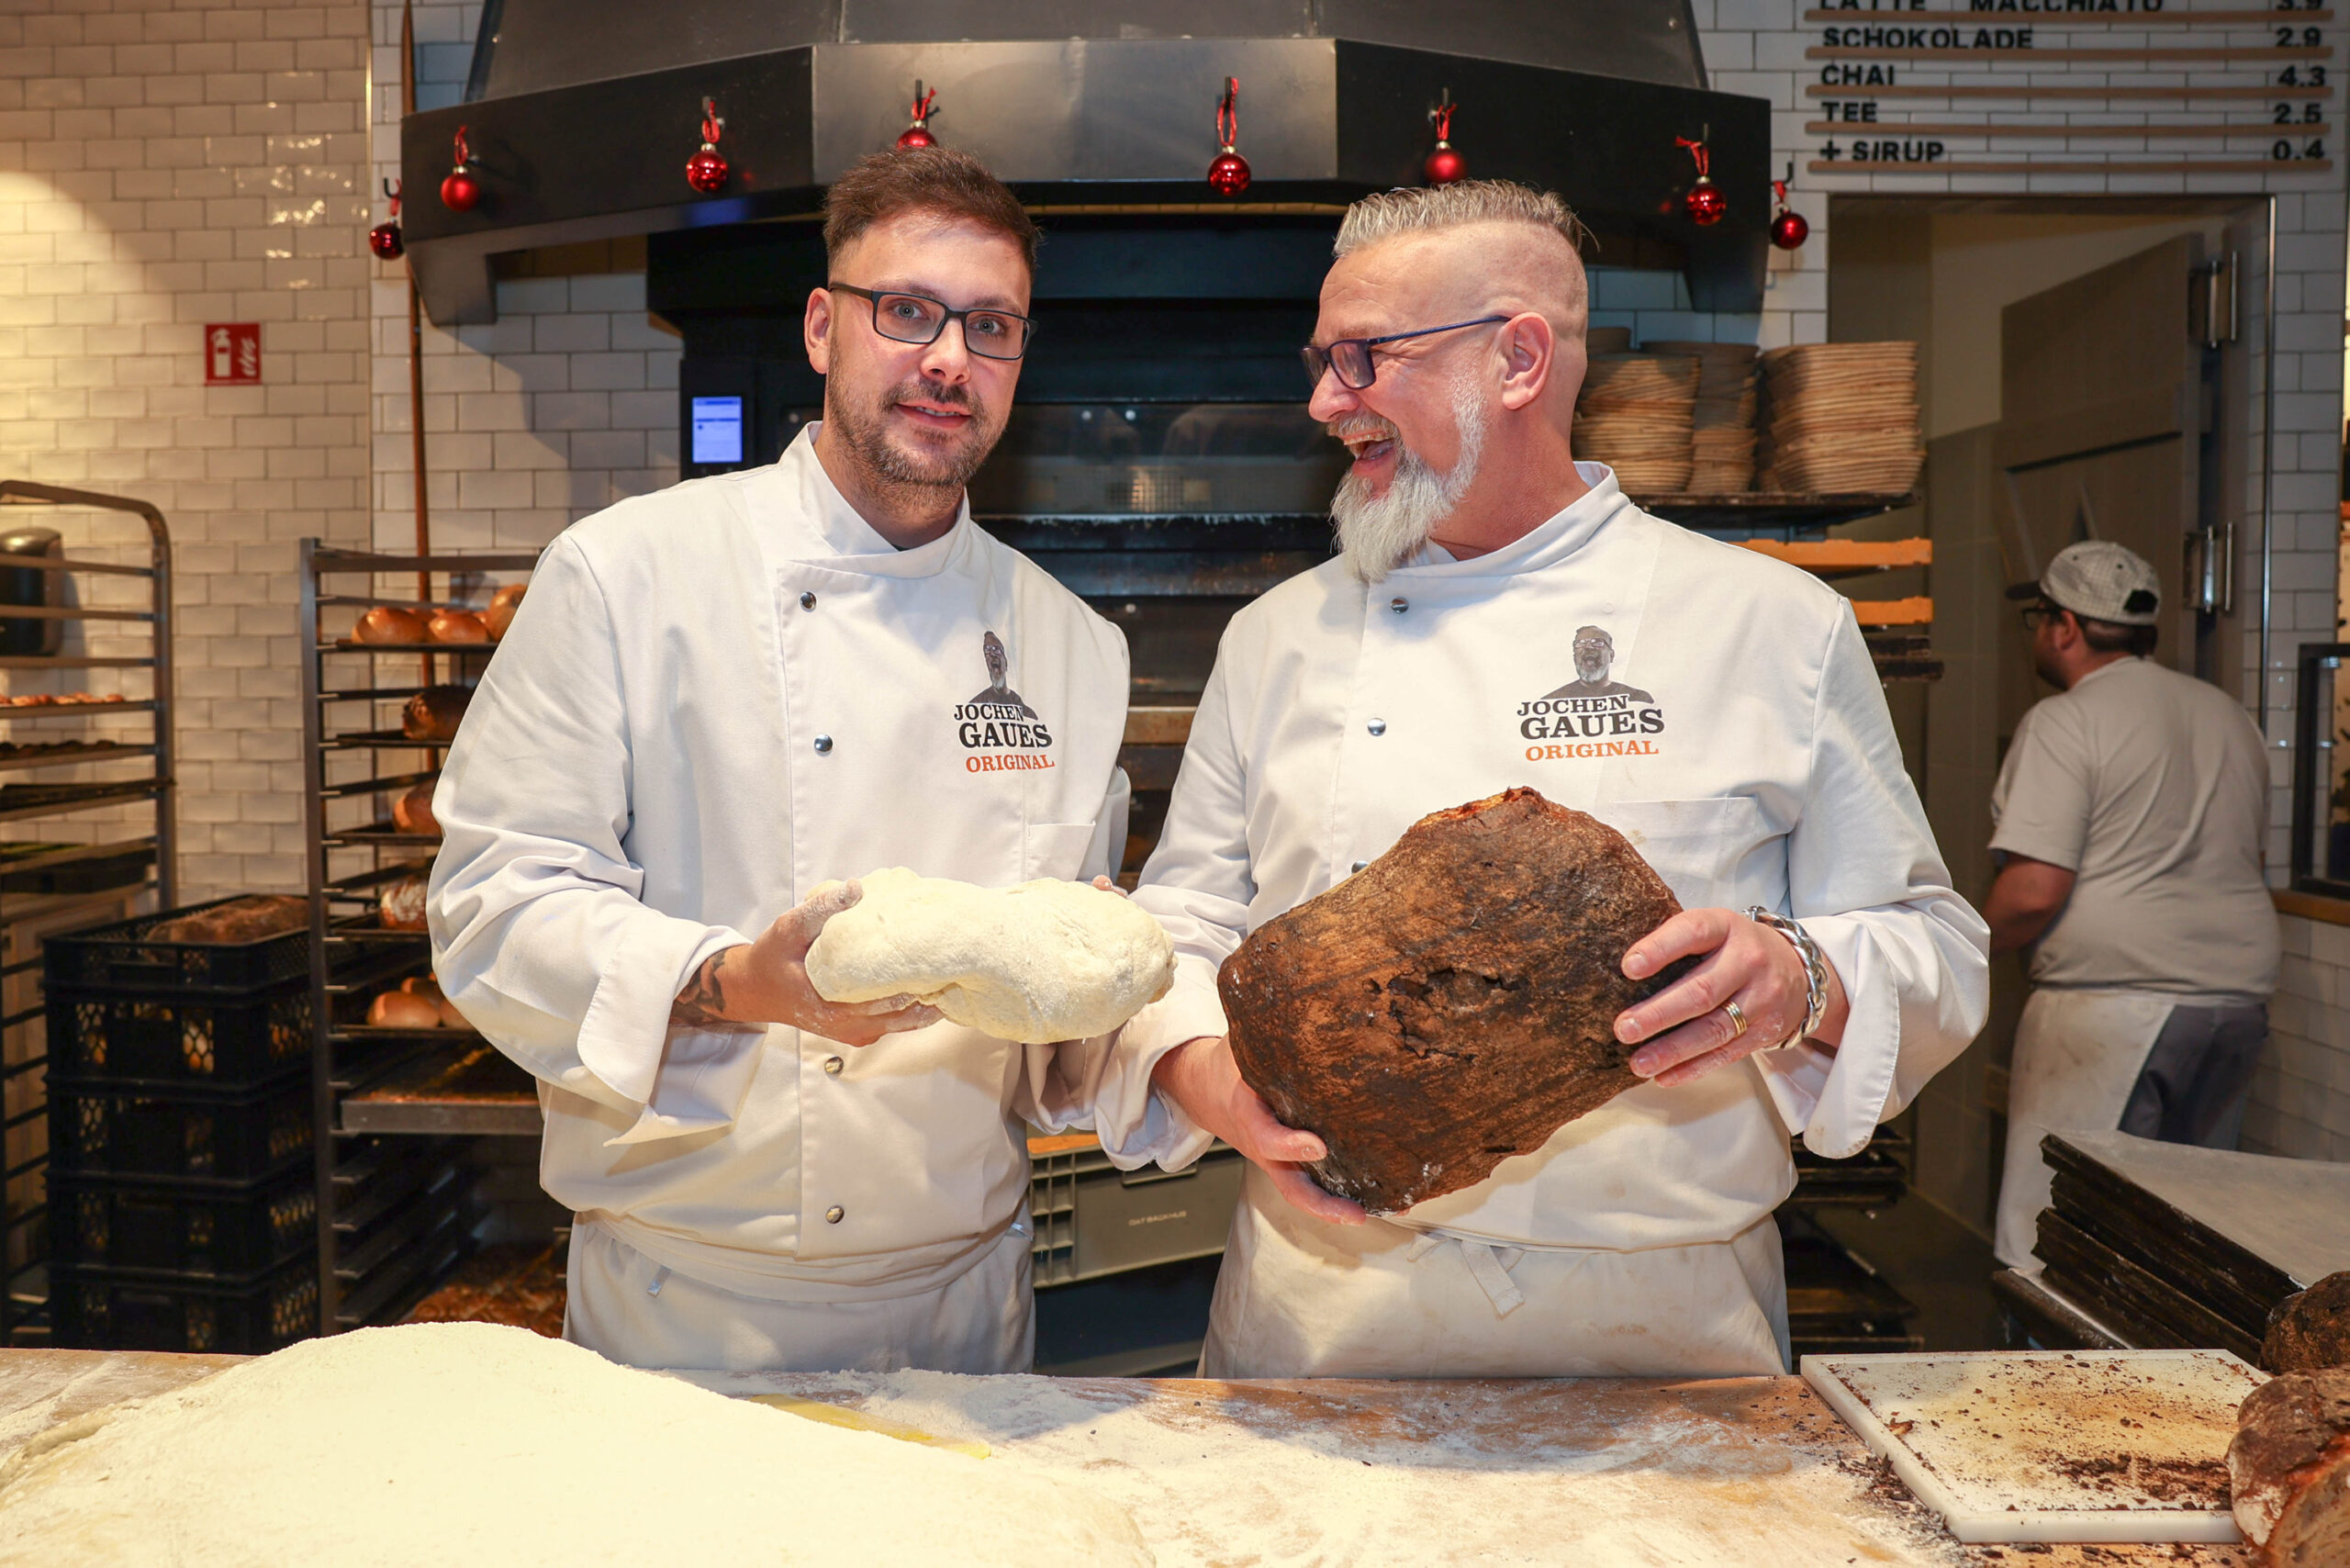 Jochen Gaues (r.) hat der MOPO seinen potenziellen Nachfolger präsentiert: „Er ist ein sensationeller Bäcker“, sagt er.